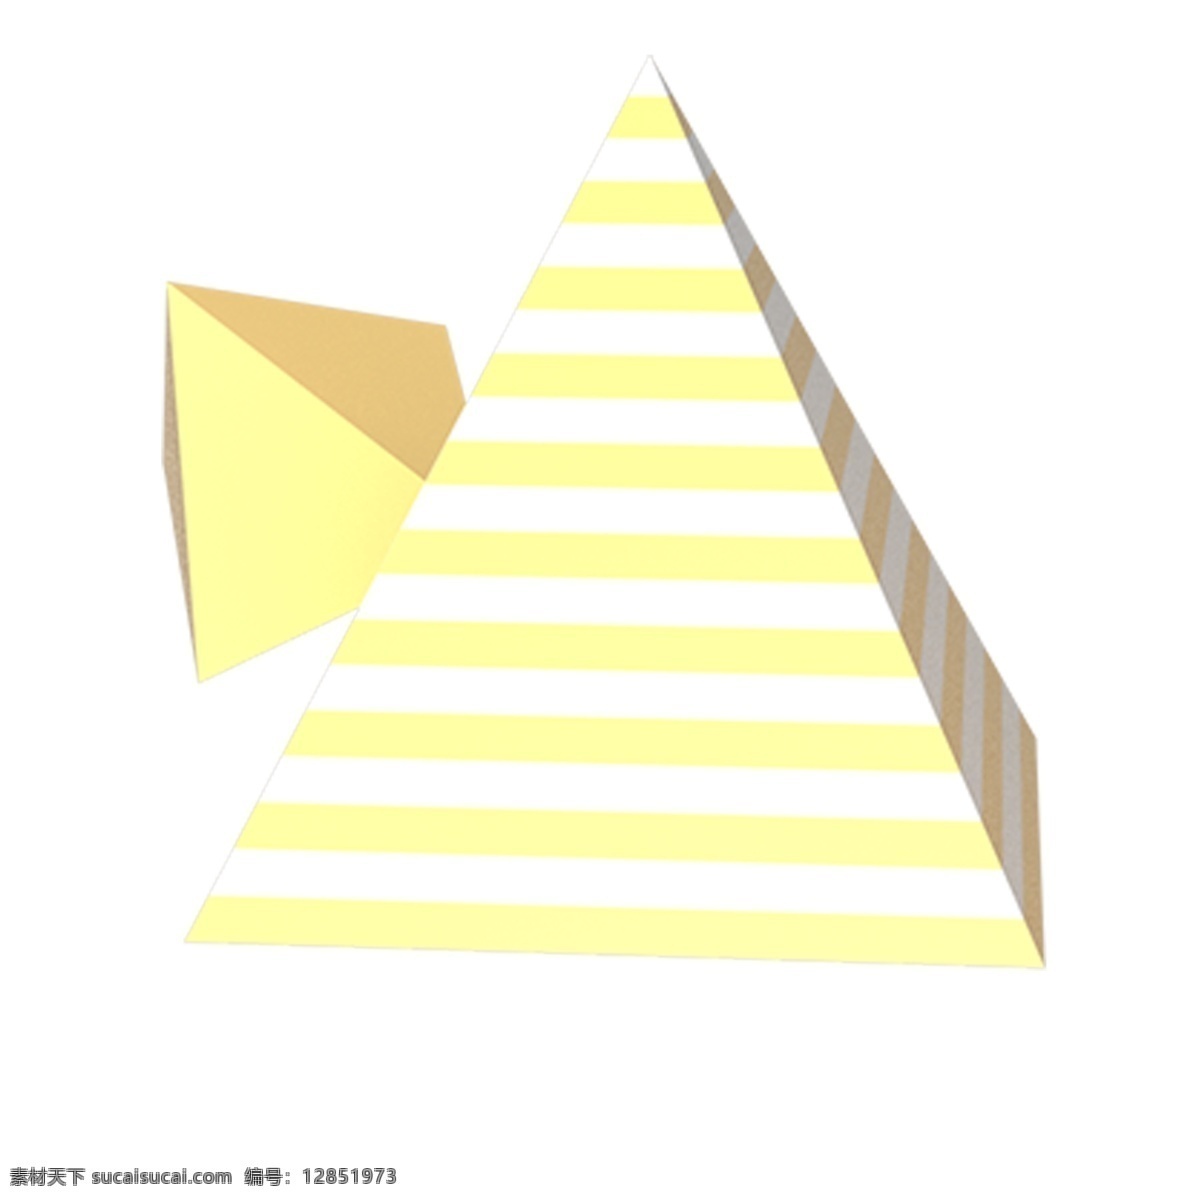 卡通 三角 体 卡通三角 三角形 三角体 黄色 插图 创意卡通下载 png图下载